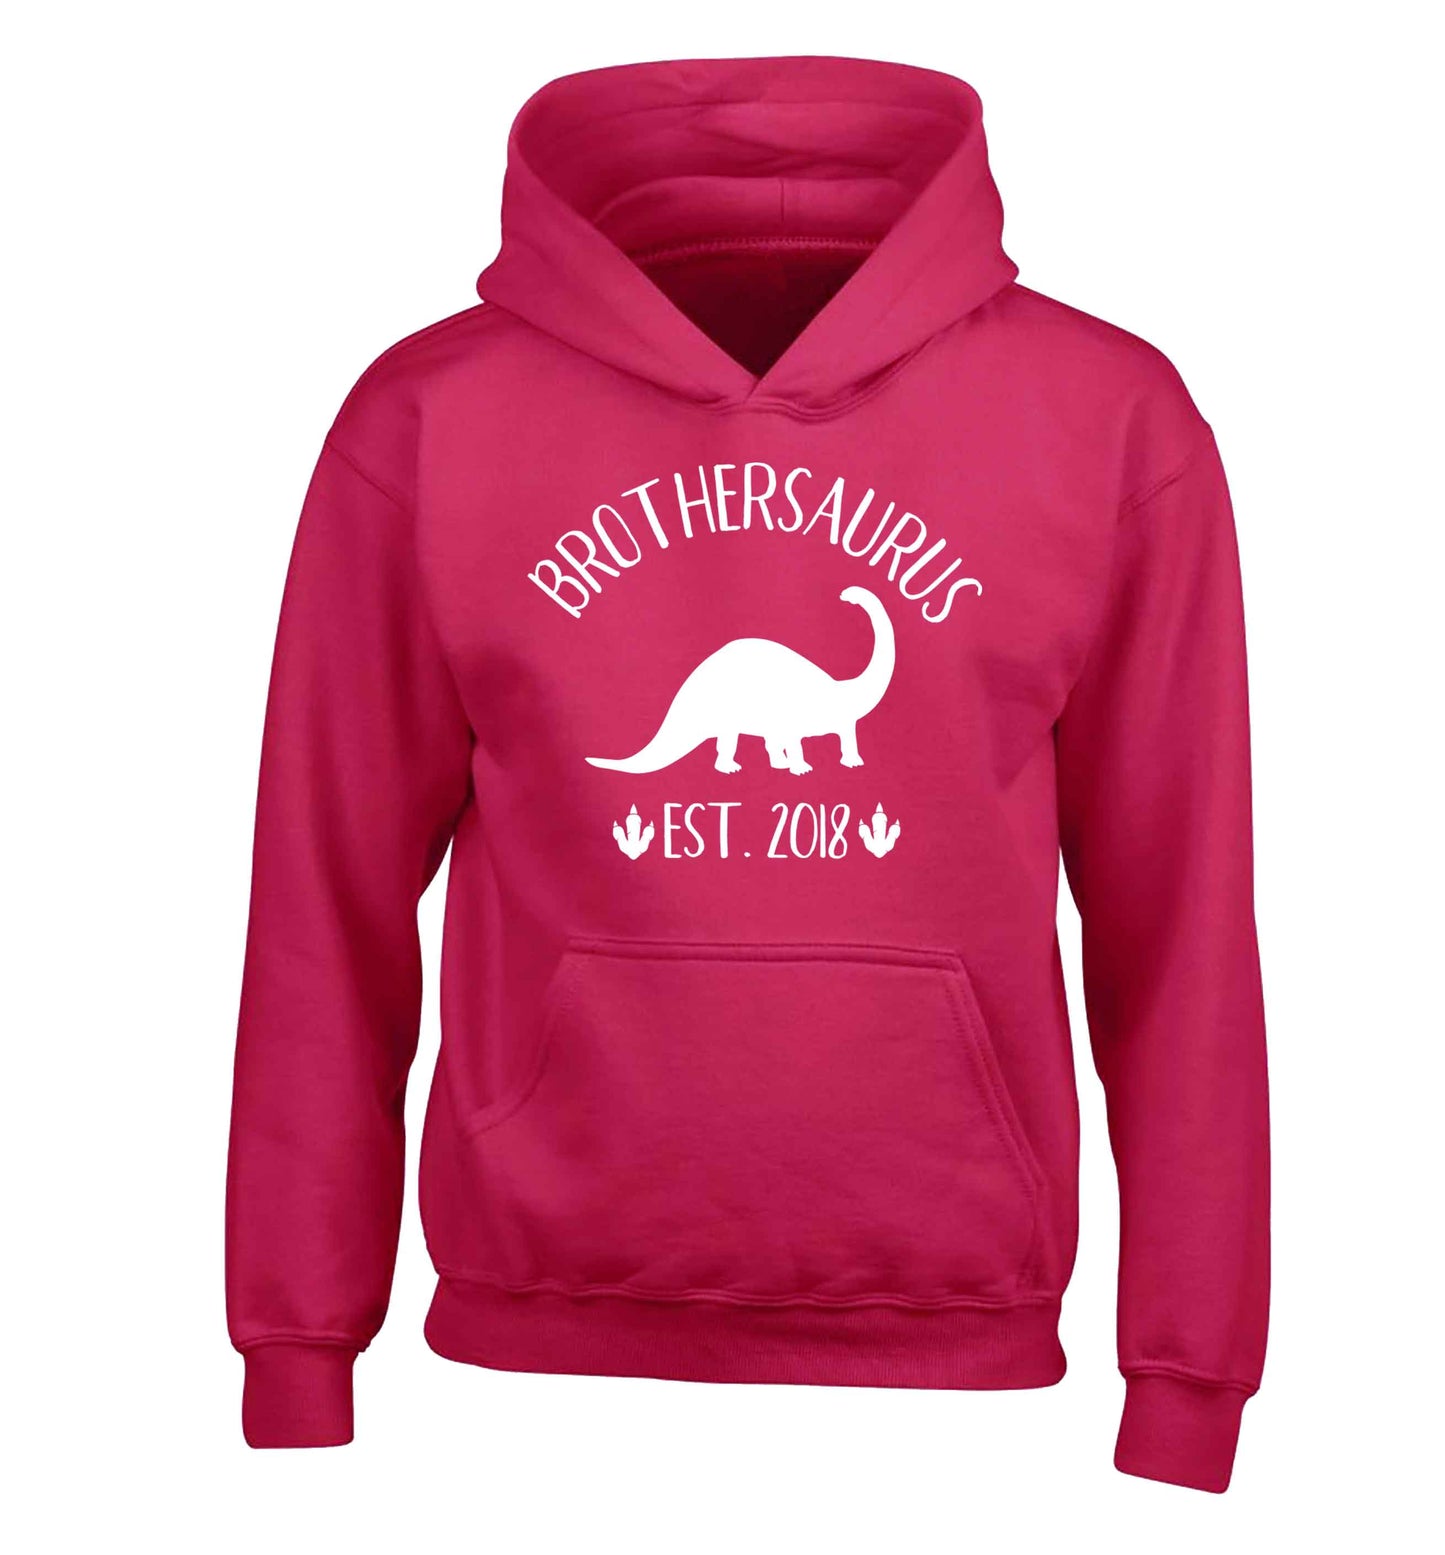 Personalised brothersaurus since (custom date) children's pink hoodie 12-13 Years